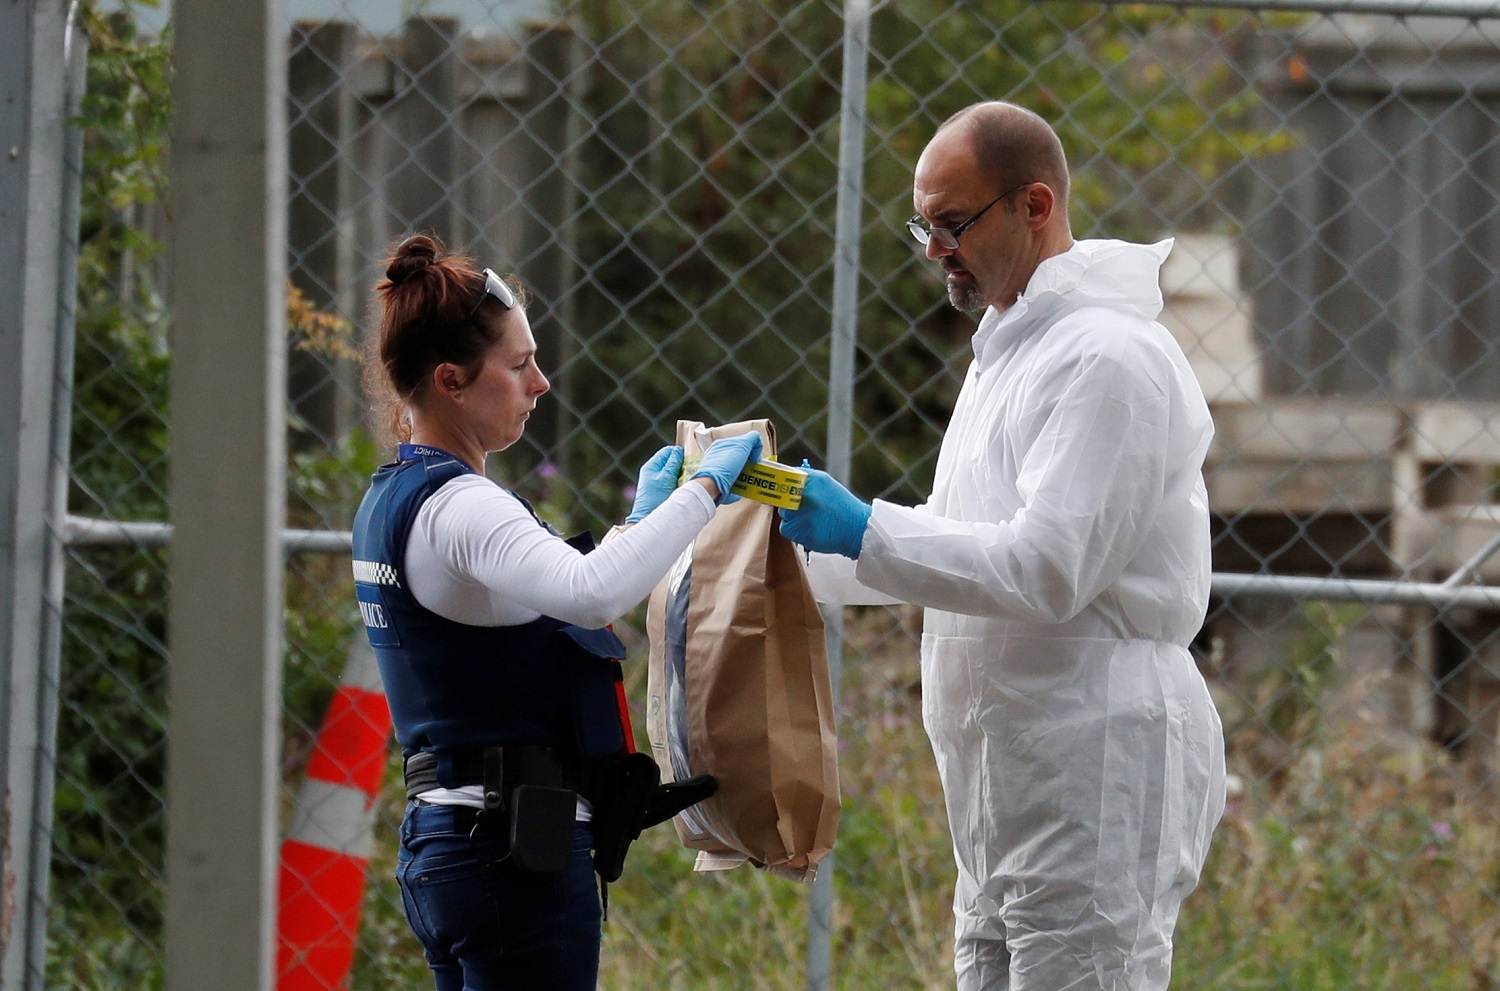 محققون وأفراد شرطة يجمعون أدلة من محيط مسجد النور بعد هجوم إرهابي في نيوزيلندا، 16 مارس 2019. رويترز 